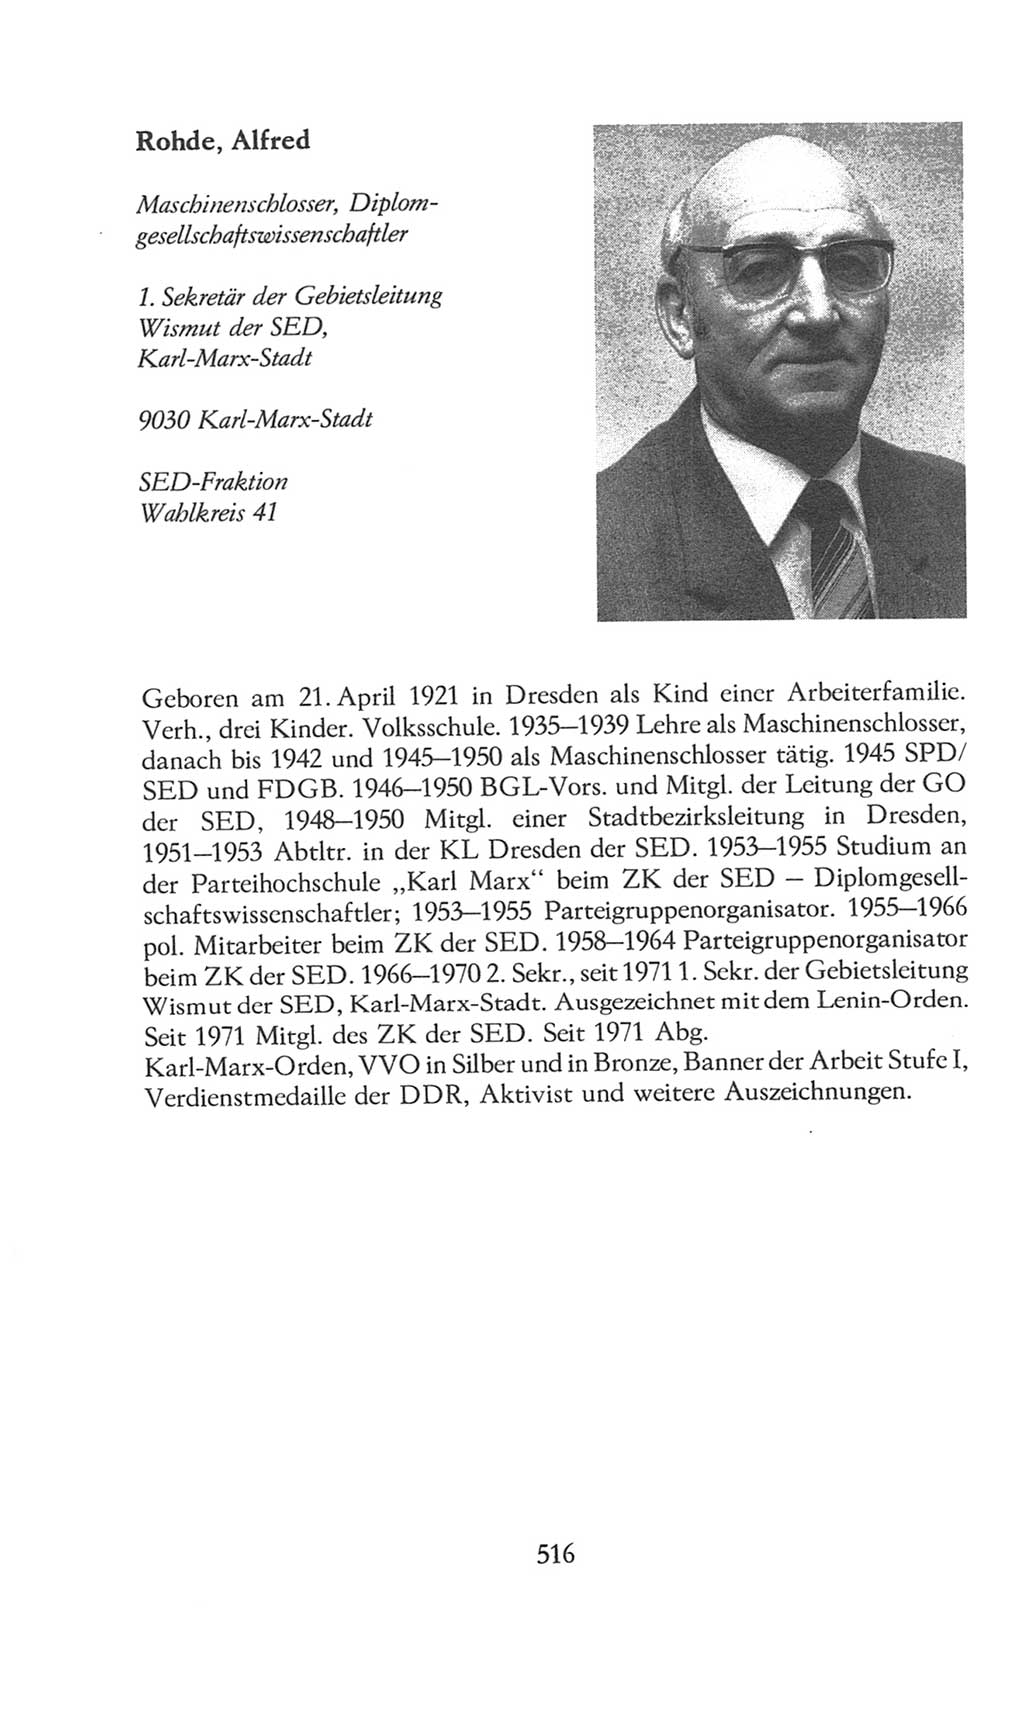 Volkskammer (VK) der Deutschen Demokratischen Republik (DDR), 8. Wahlperiode 1981-1986, Seite 516 (VK. DDR 8. WP. 1981-1986, S. 516)